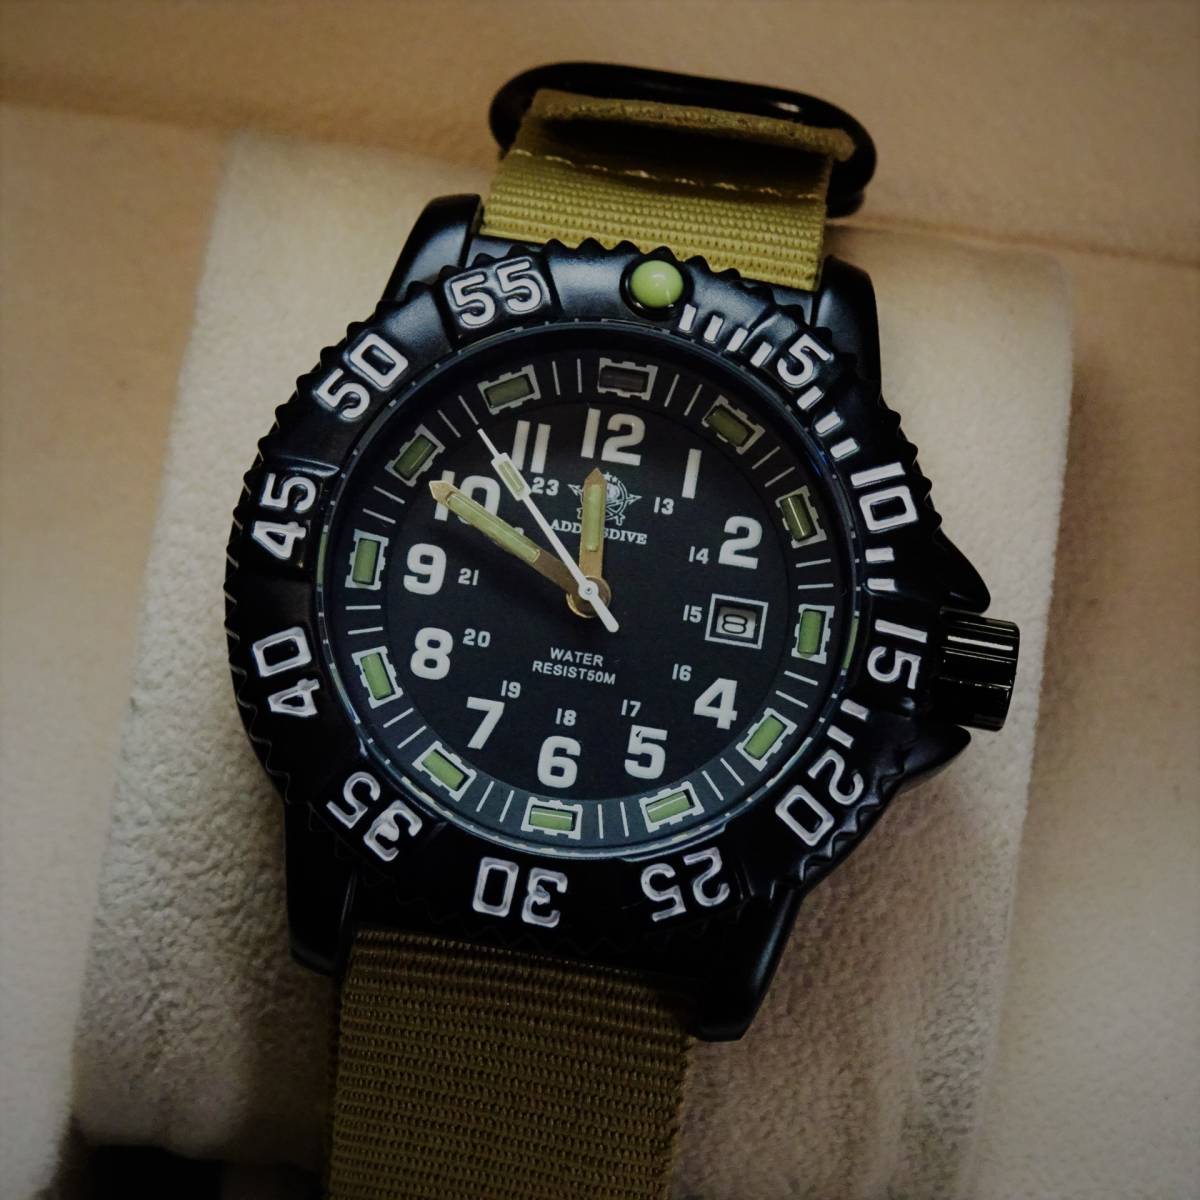 1円〓新品Addiesdive1970ブランド 軍用スタイル腕時計Miyota2115クオーツムーブメント搭載〓ブラックケース〓NATOミリタリーストラップ _画像1